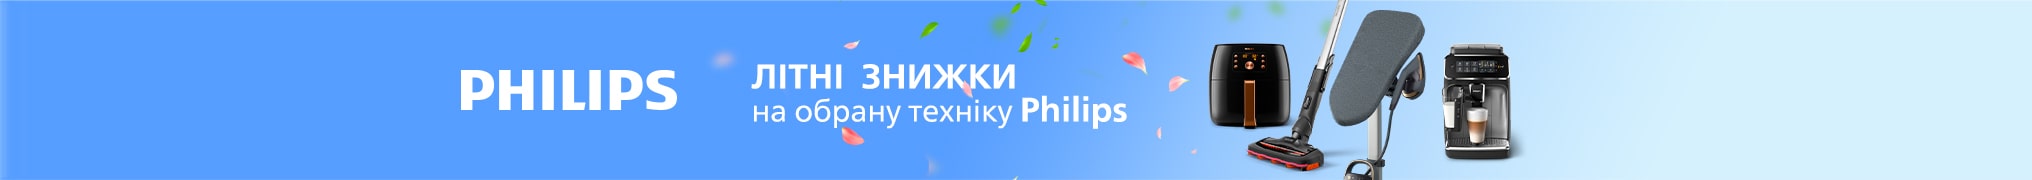 Літні знижки до 55% на побутову техніку Philips та кредити до 24 місяців